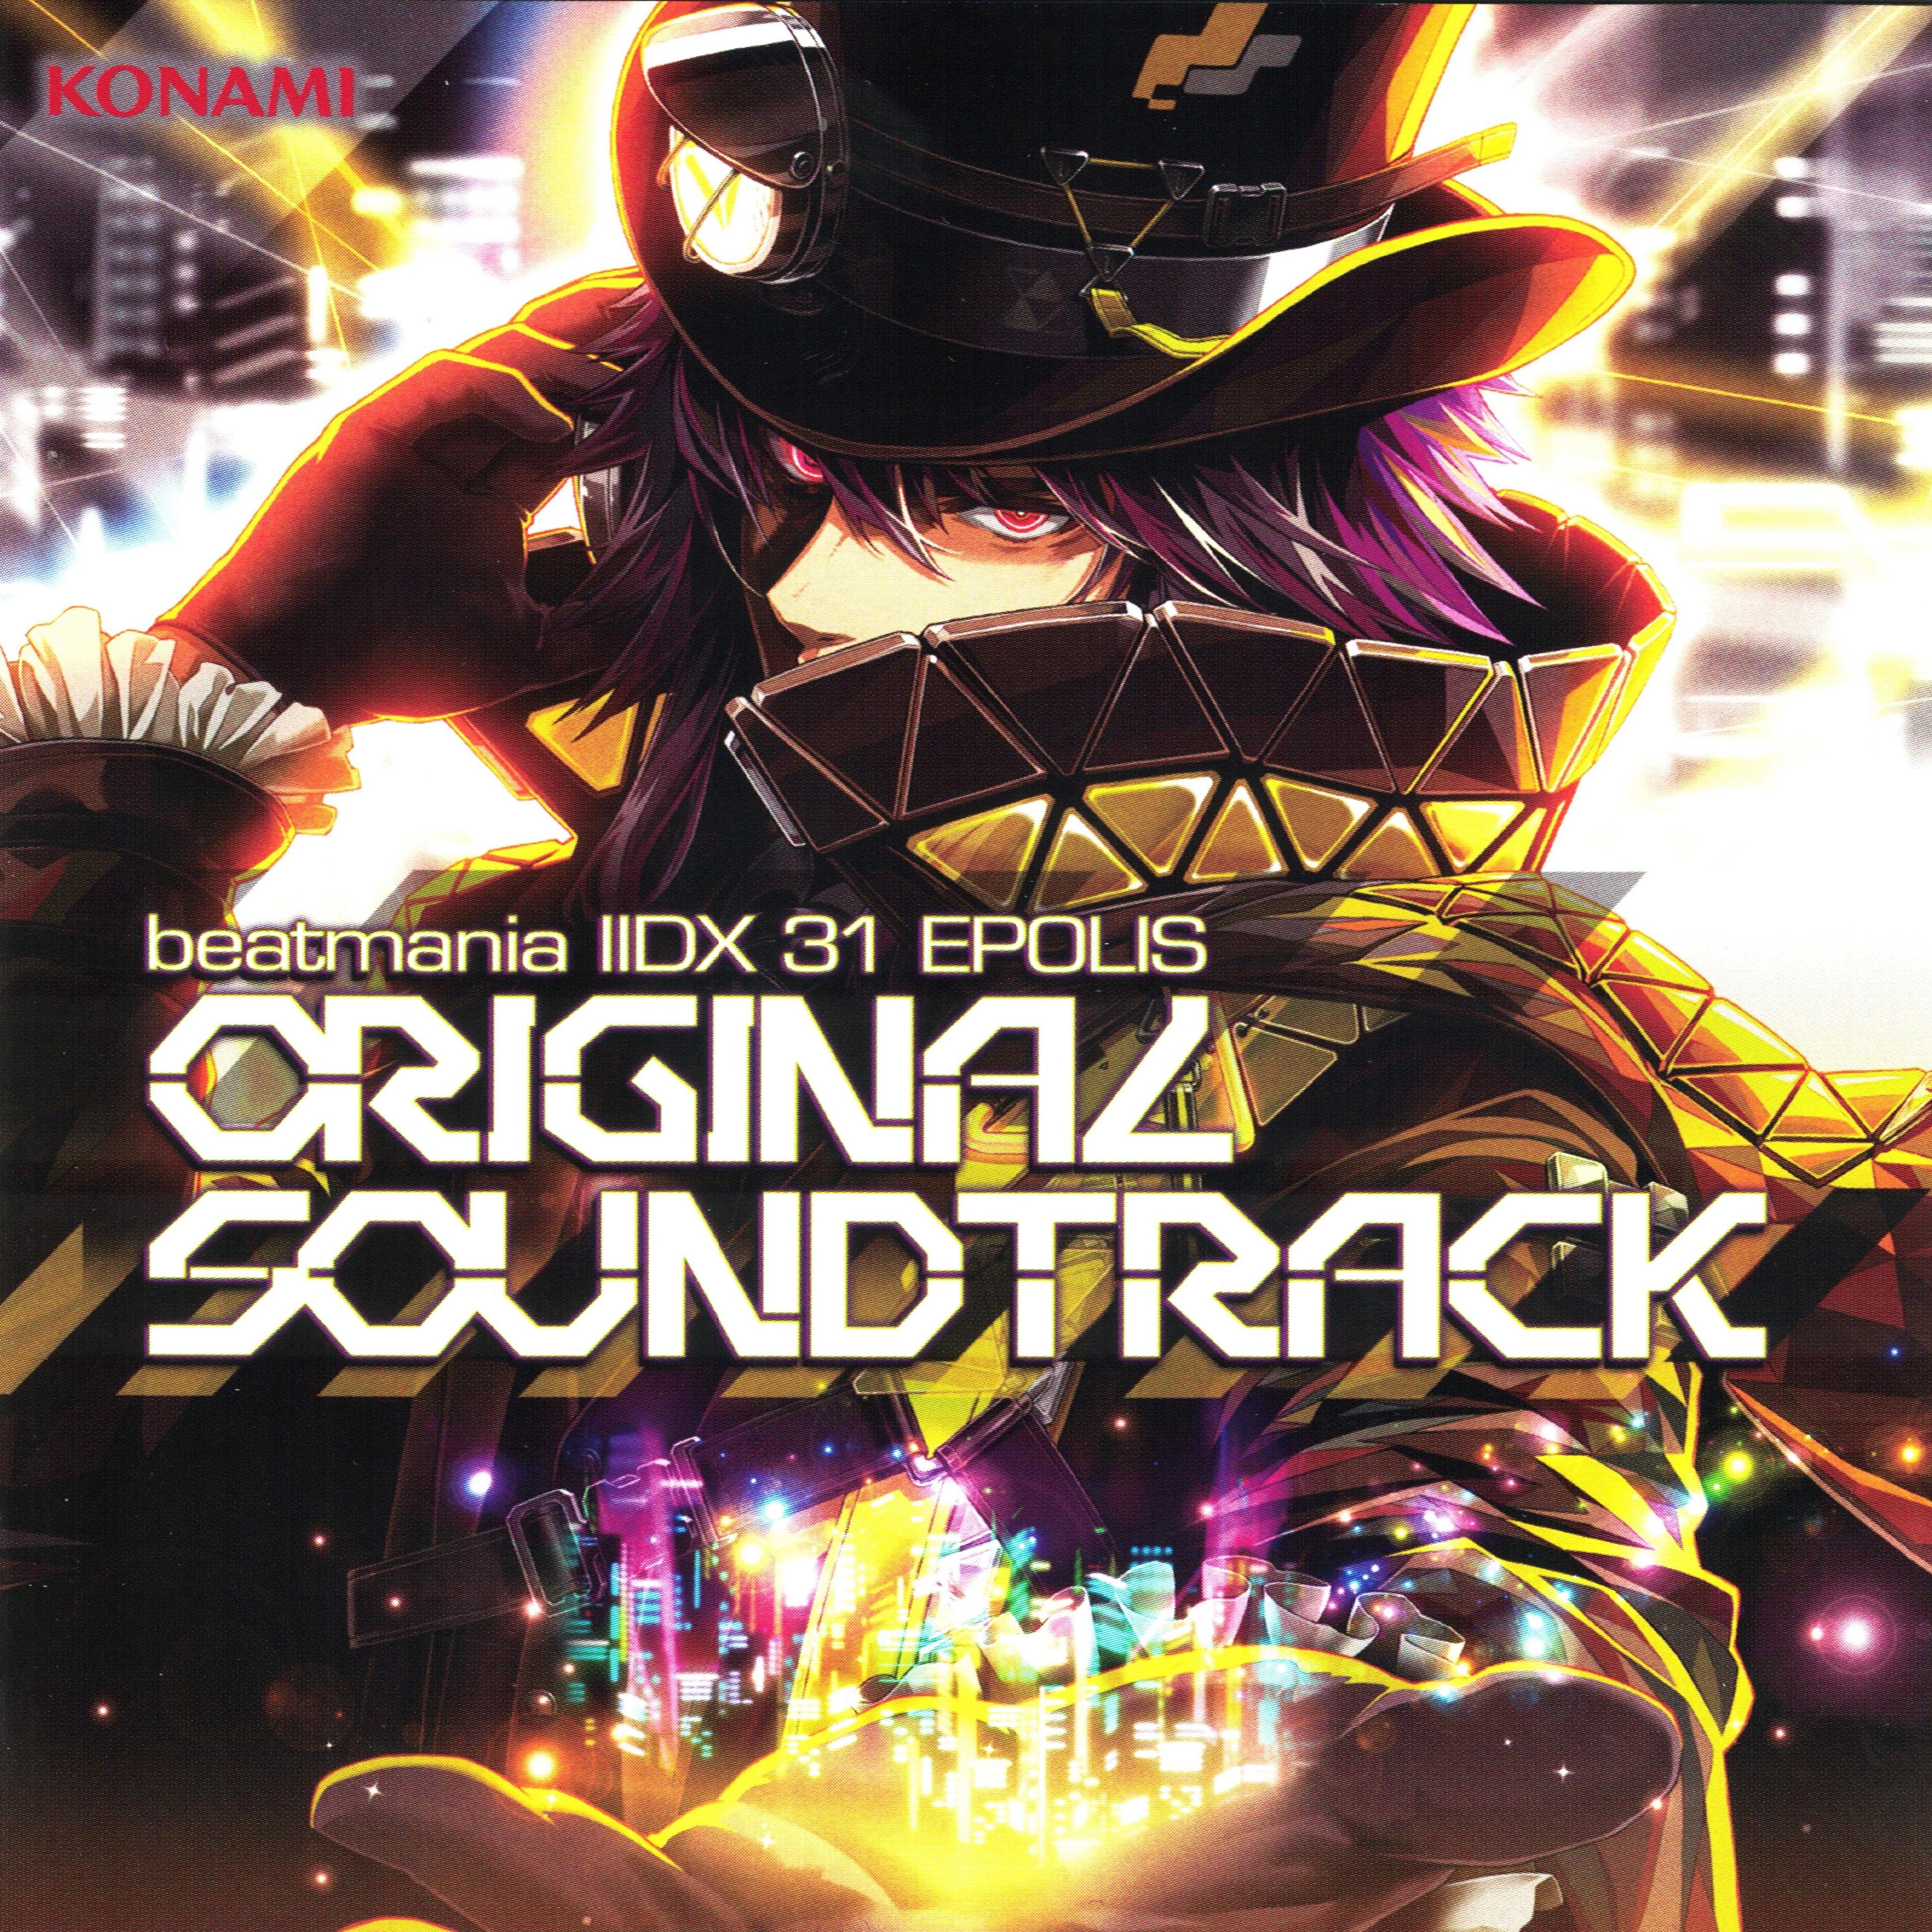 beatmania IIDX 31 Epolis Original Soundtrack